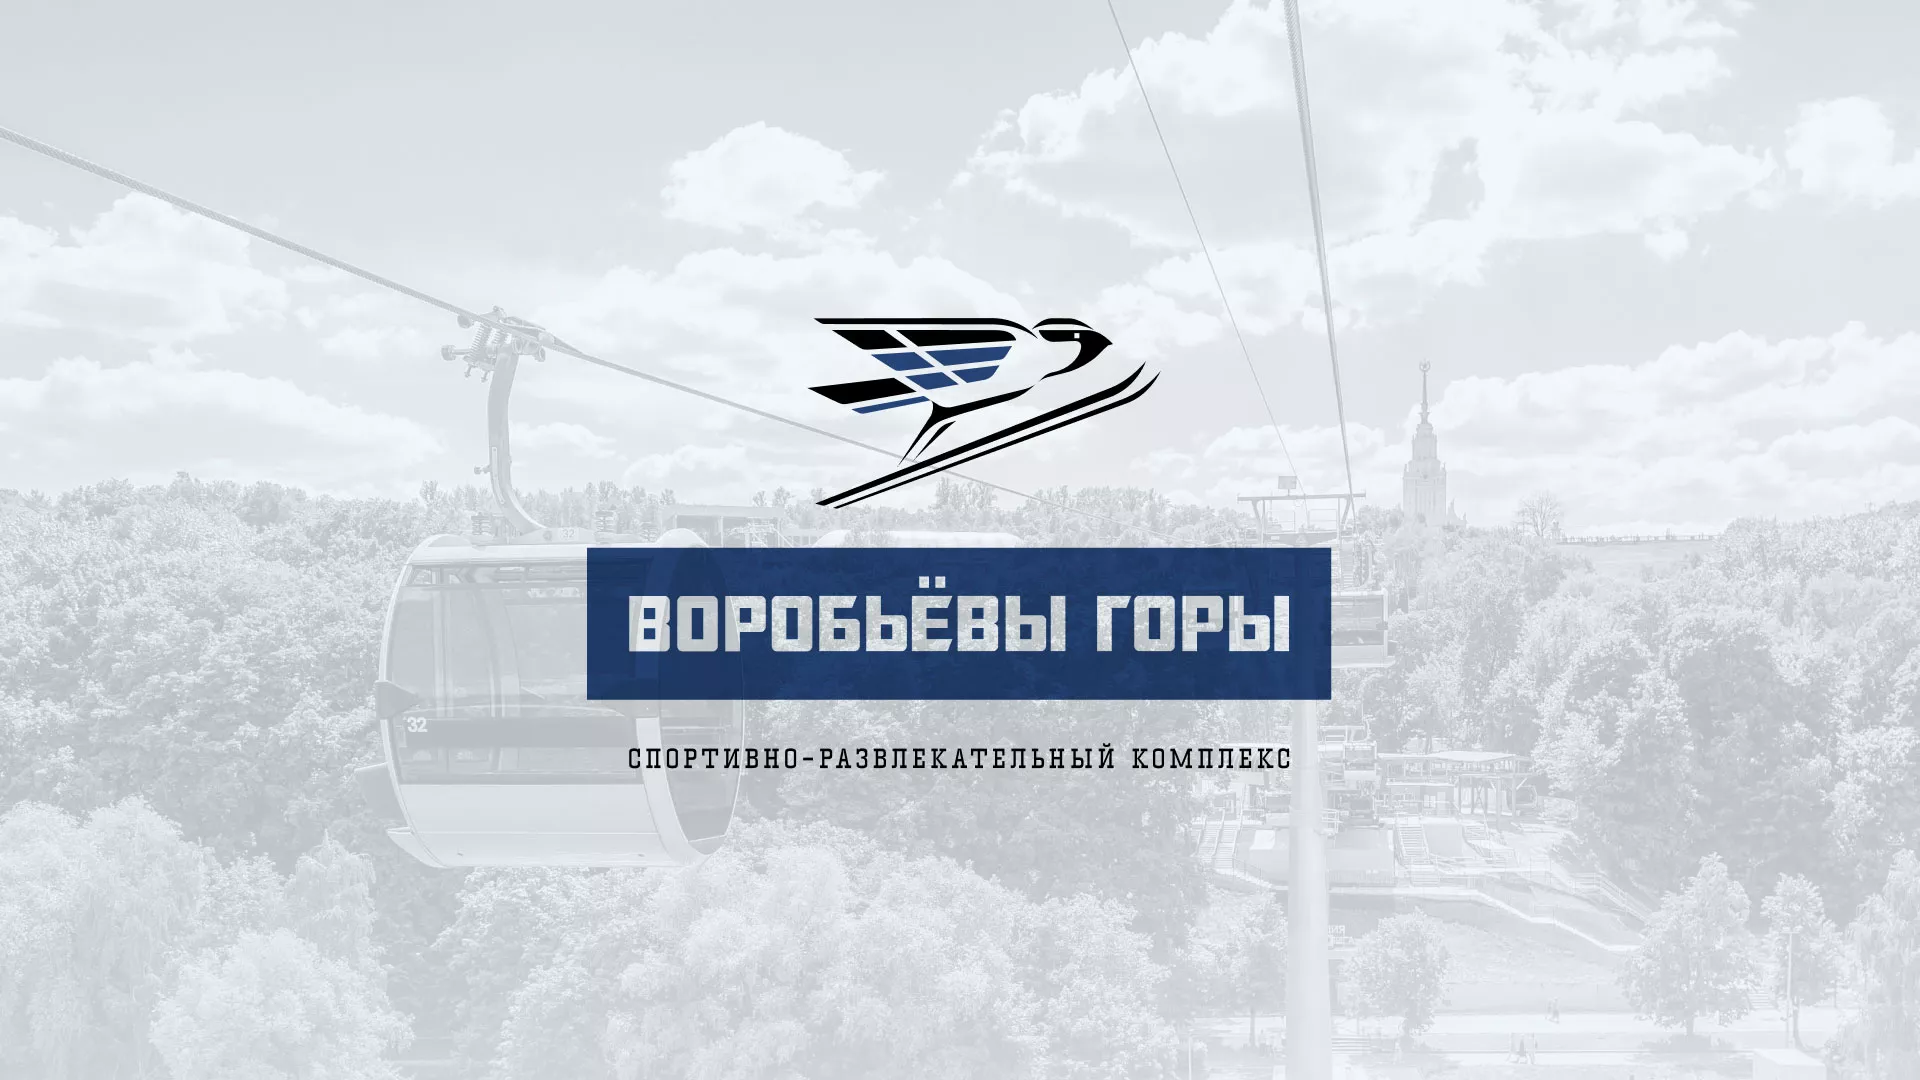 Разработка сайта в Зеленограде для спортивно-развлекательного комплекса «Воробьёвы горы»